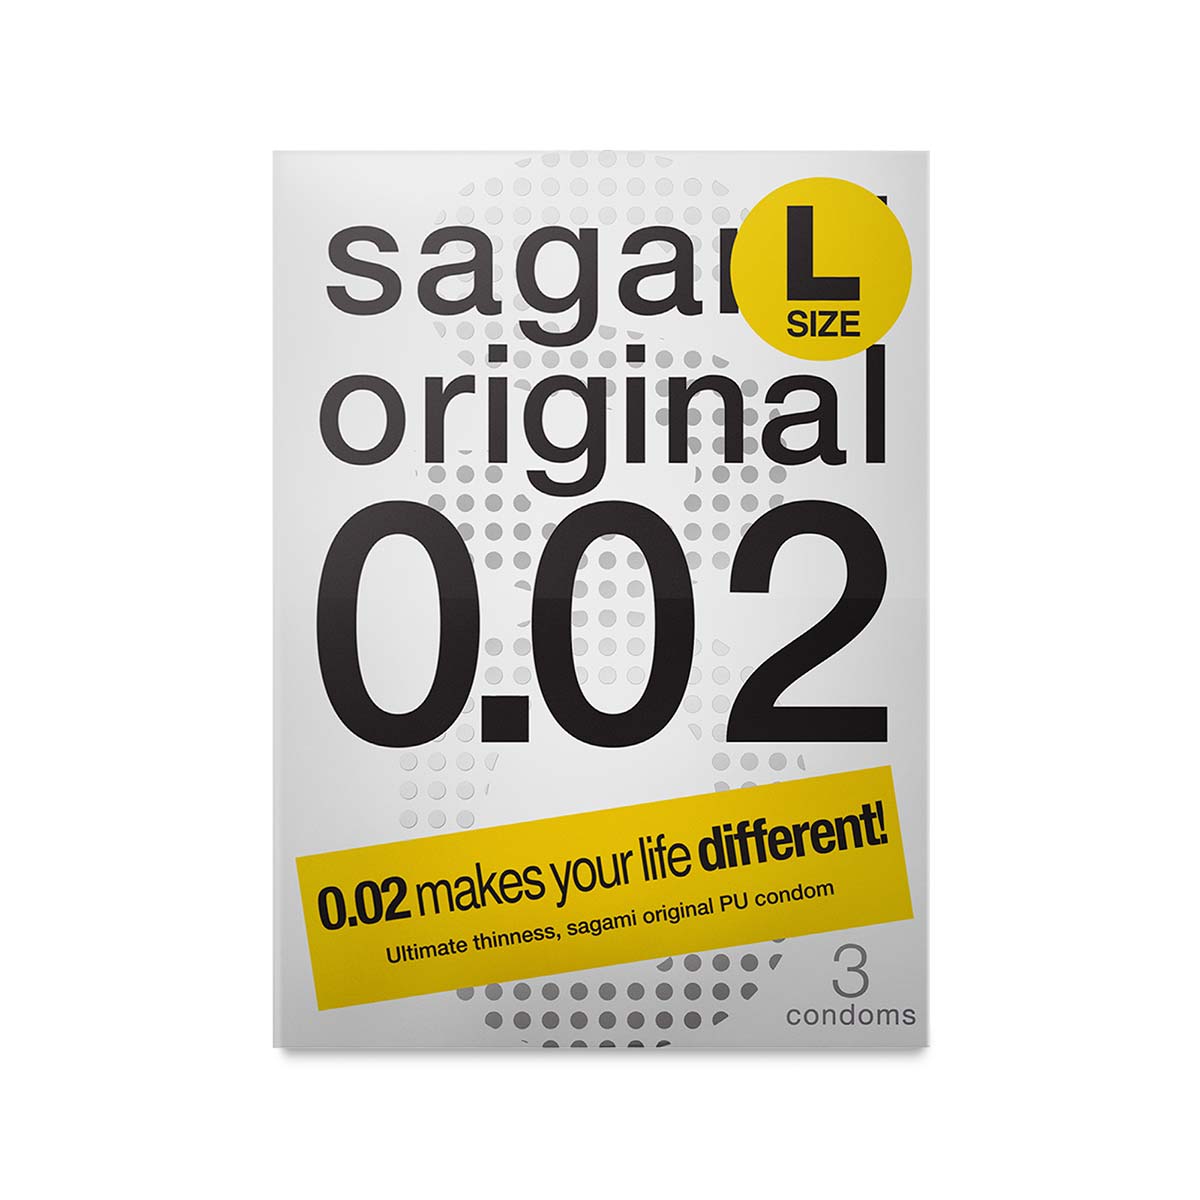 Sagami Original 0.02 L Size 3s